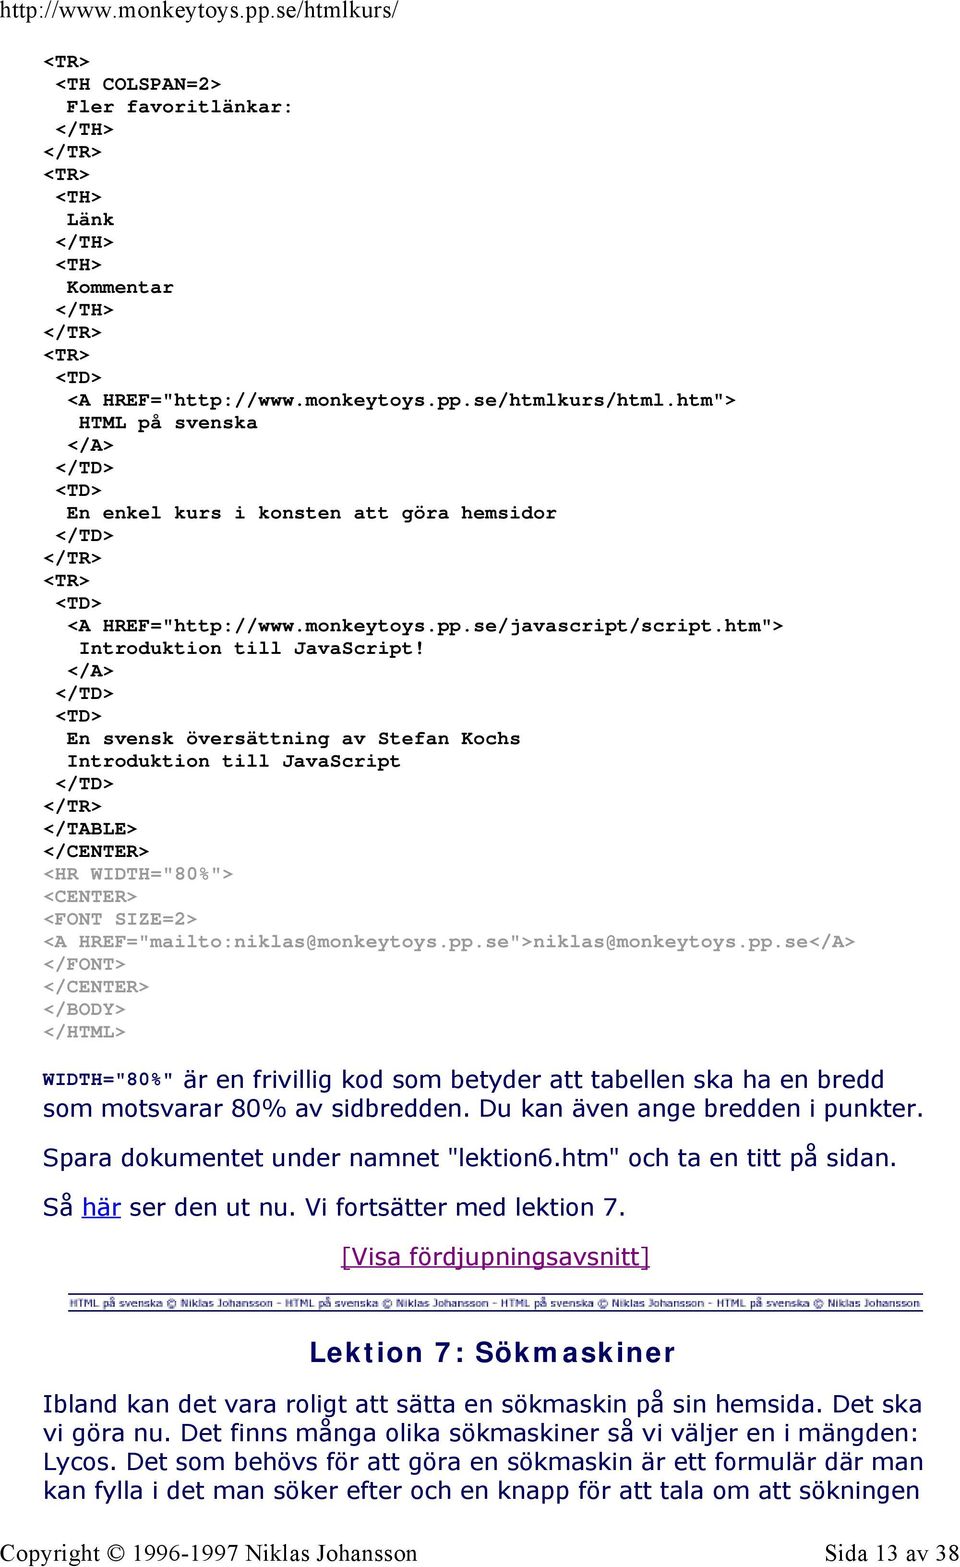 </A> </TD> <TD> En svensk översättning av Stefan Kochs Introduktion till JavaScript </TD> </TABLE> <HR WIDTH="80%"> <FONT SIZE=2> <A HREF="mailto:niklas@monkeytoys.pp.